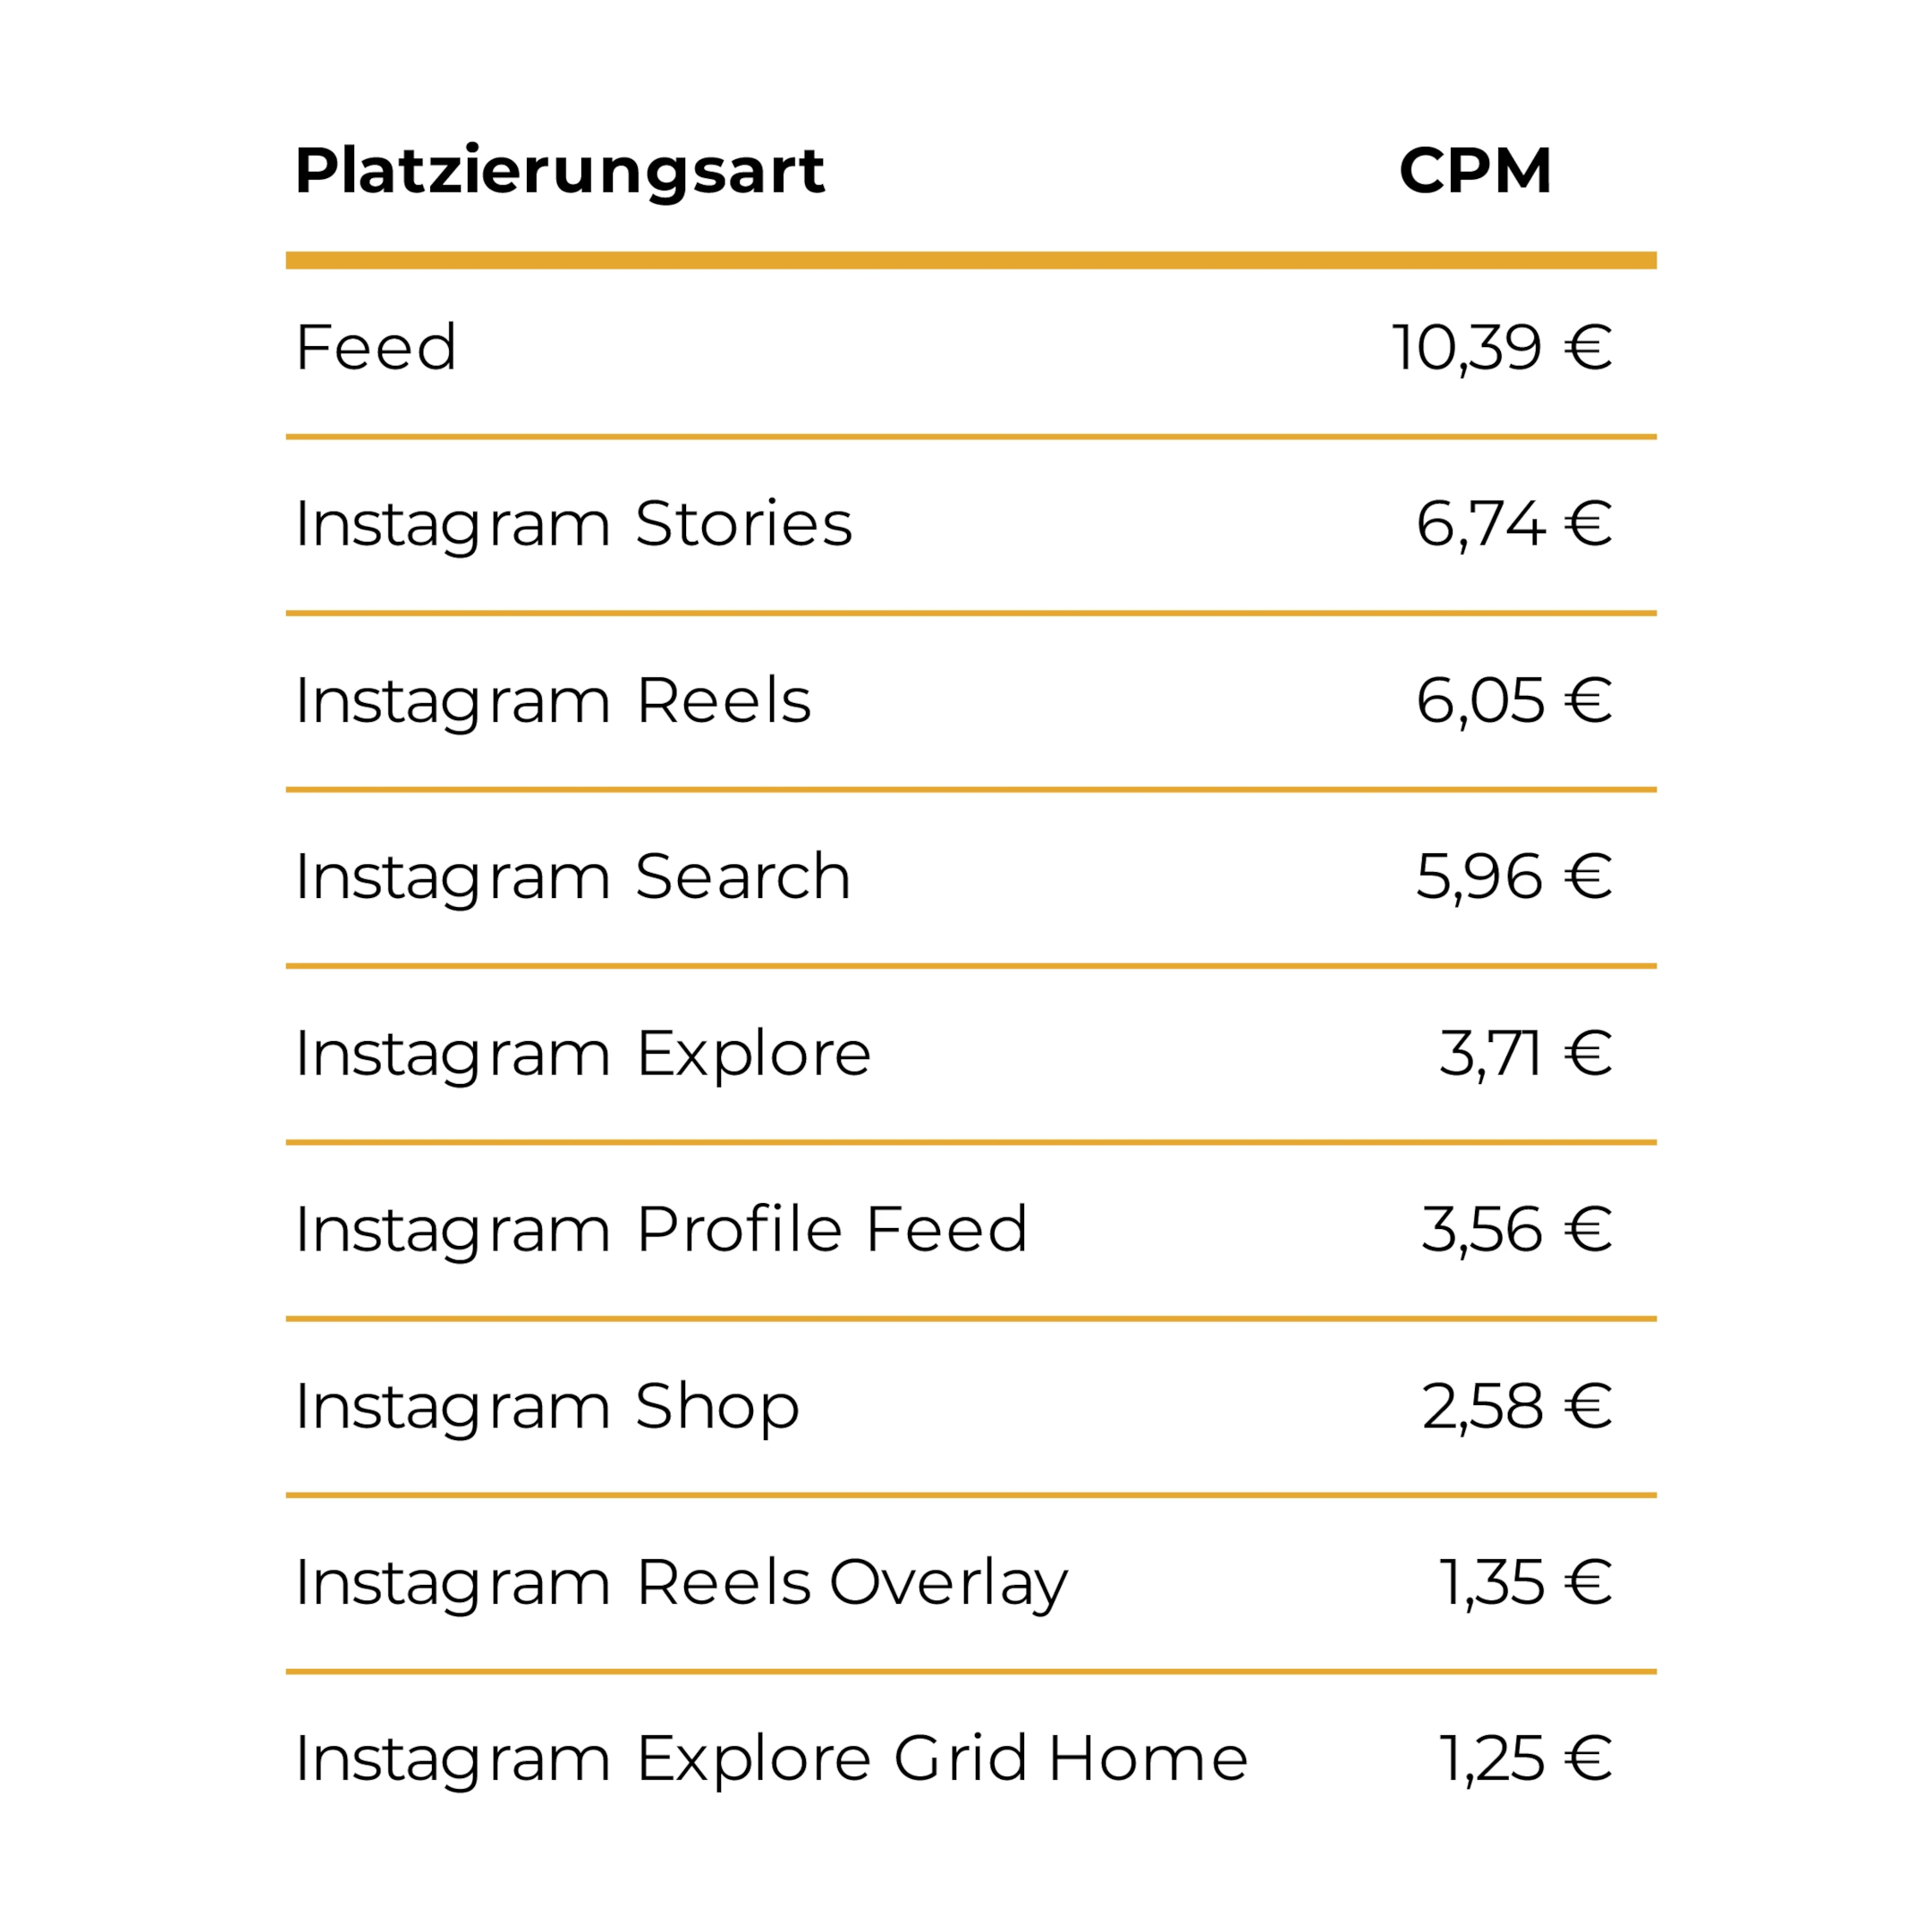 Platzierungsarten Instagram Werbung Kosten CPM